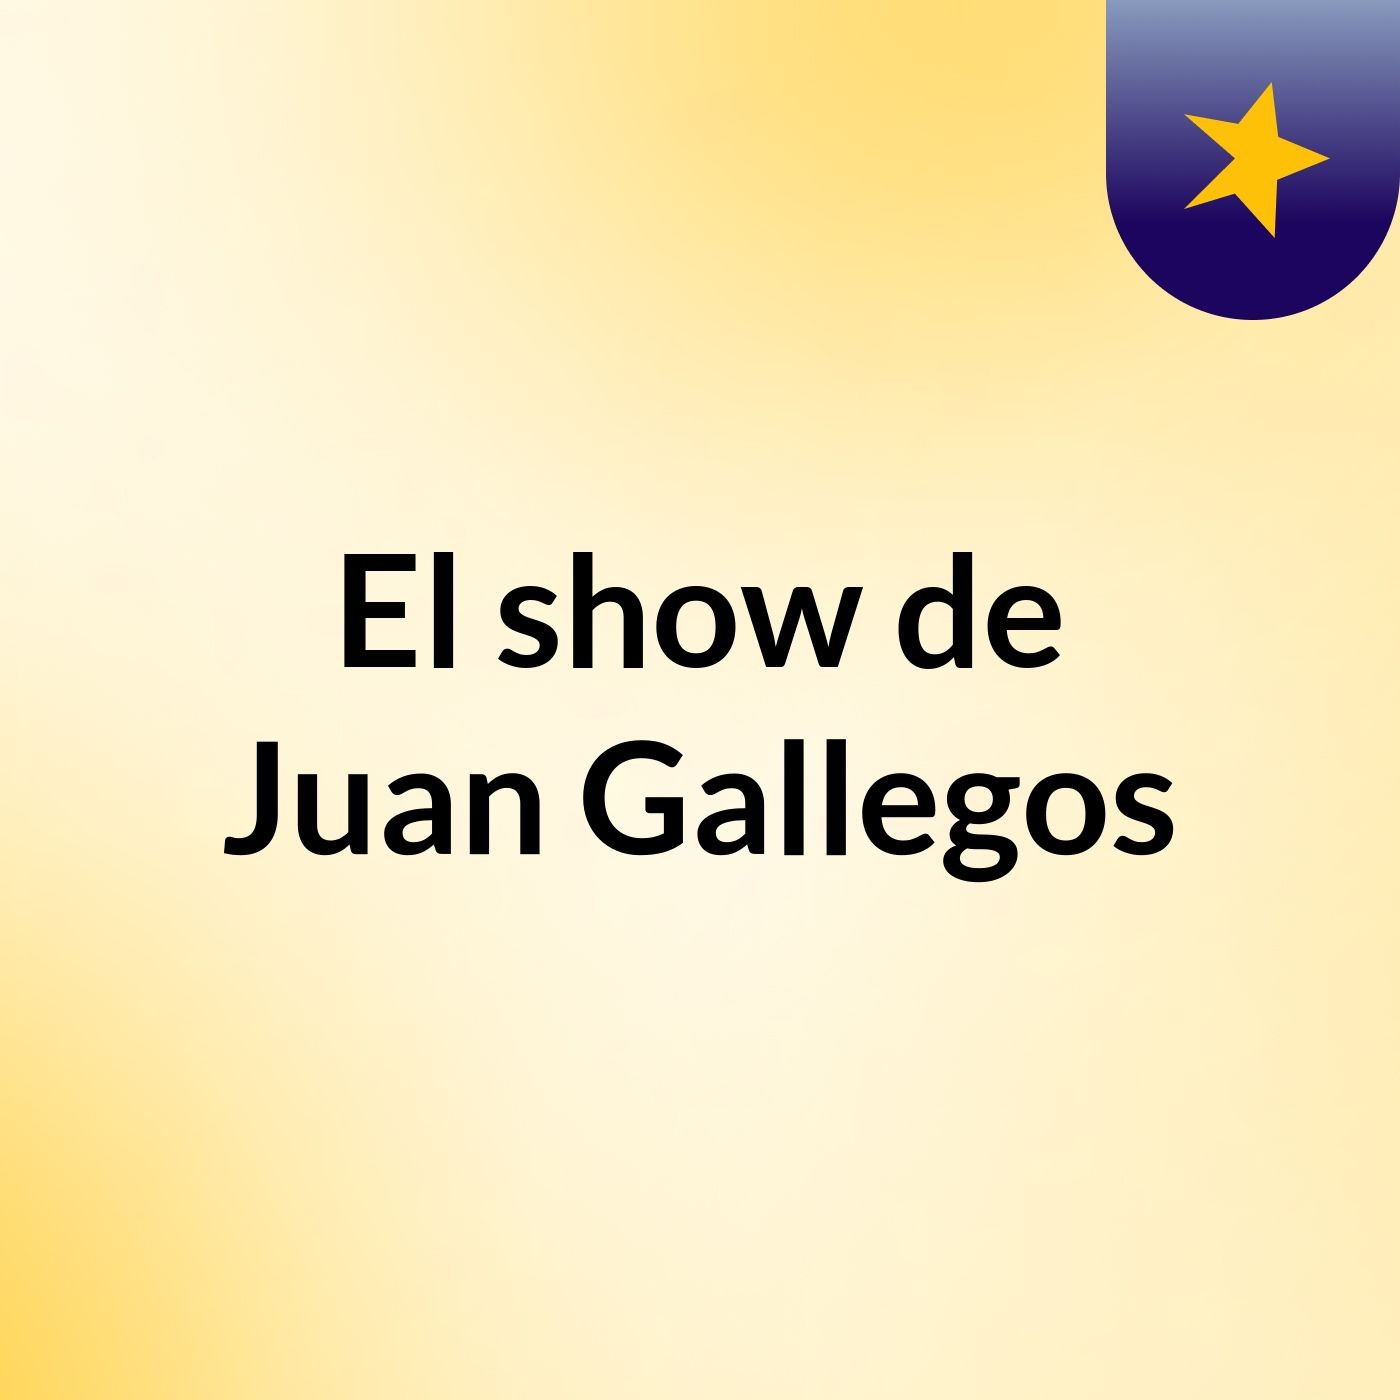 El show de Juan Gallegos